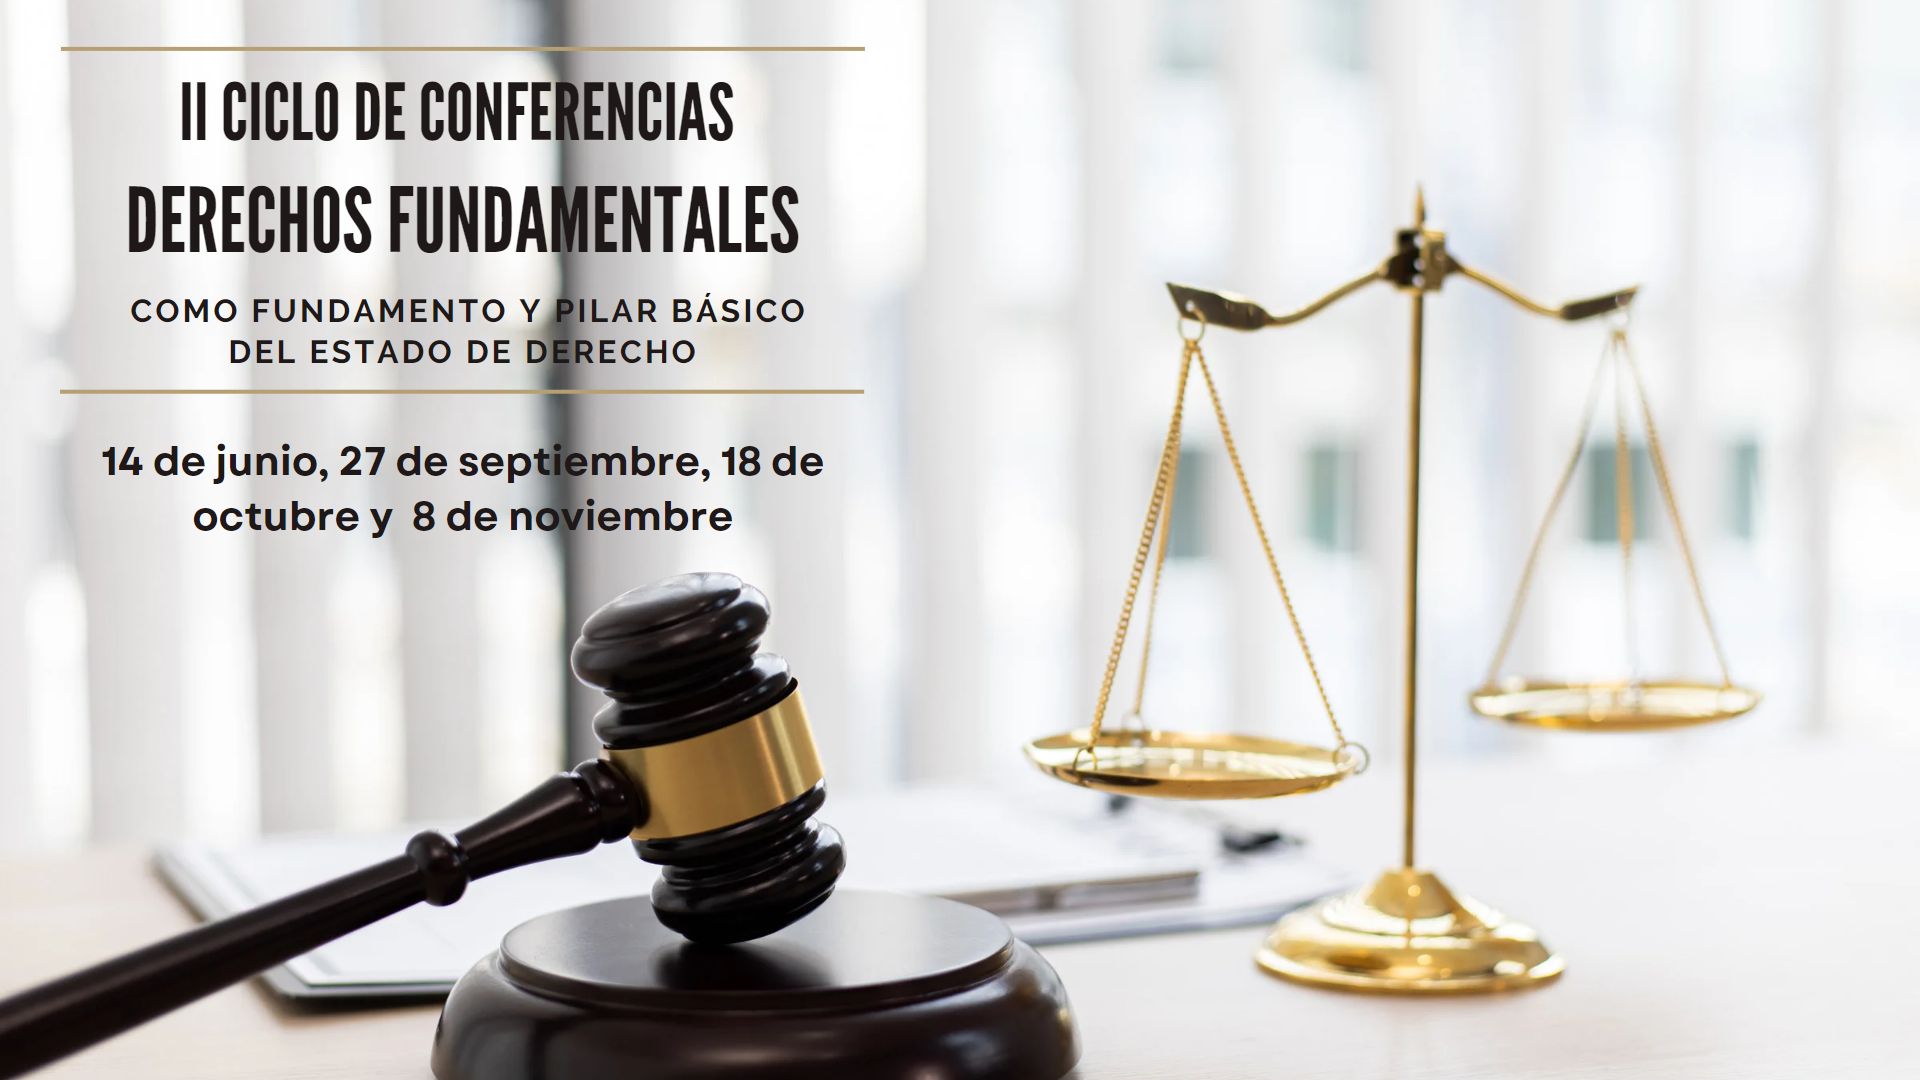 II Ciclo de Conferencias: Derechos Fundamentales como fundamento y pilar básico del Estado de Derecho